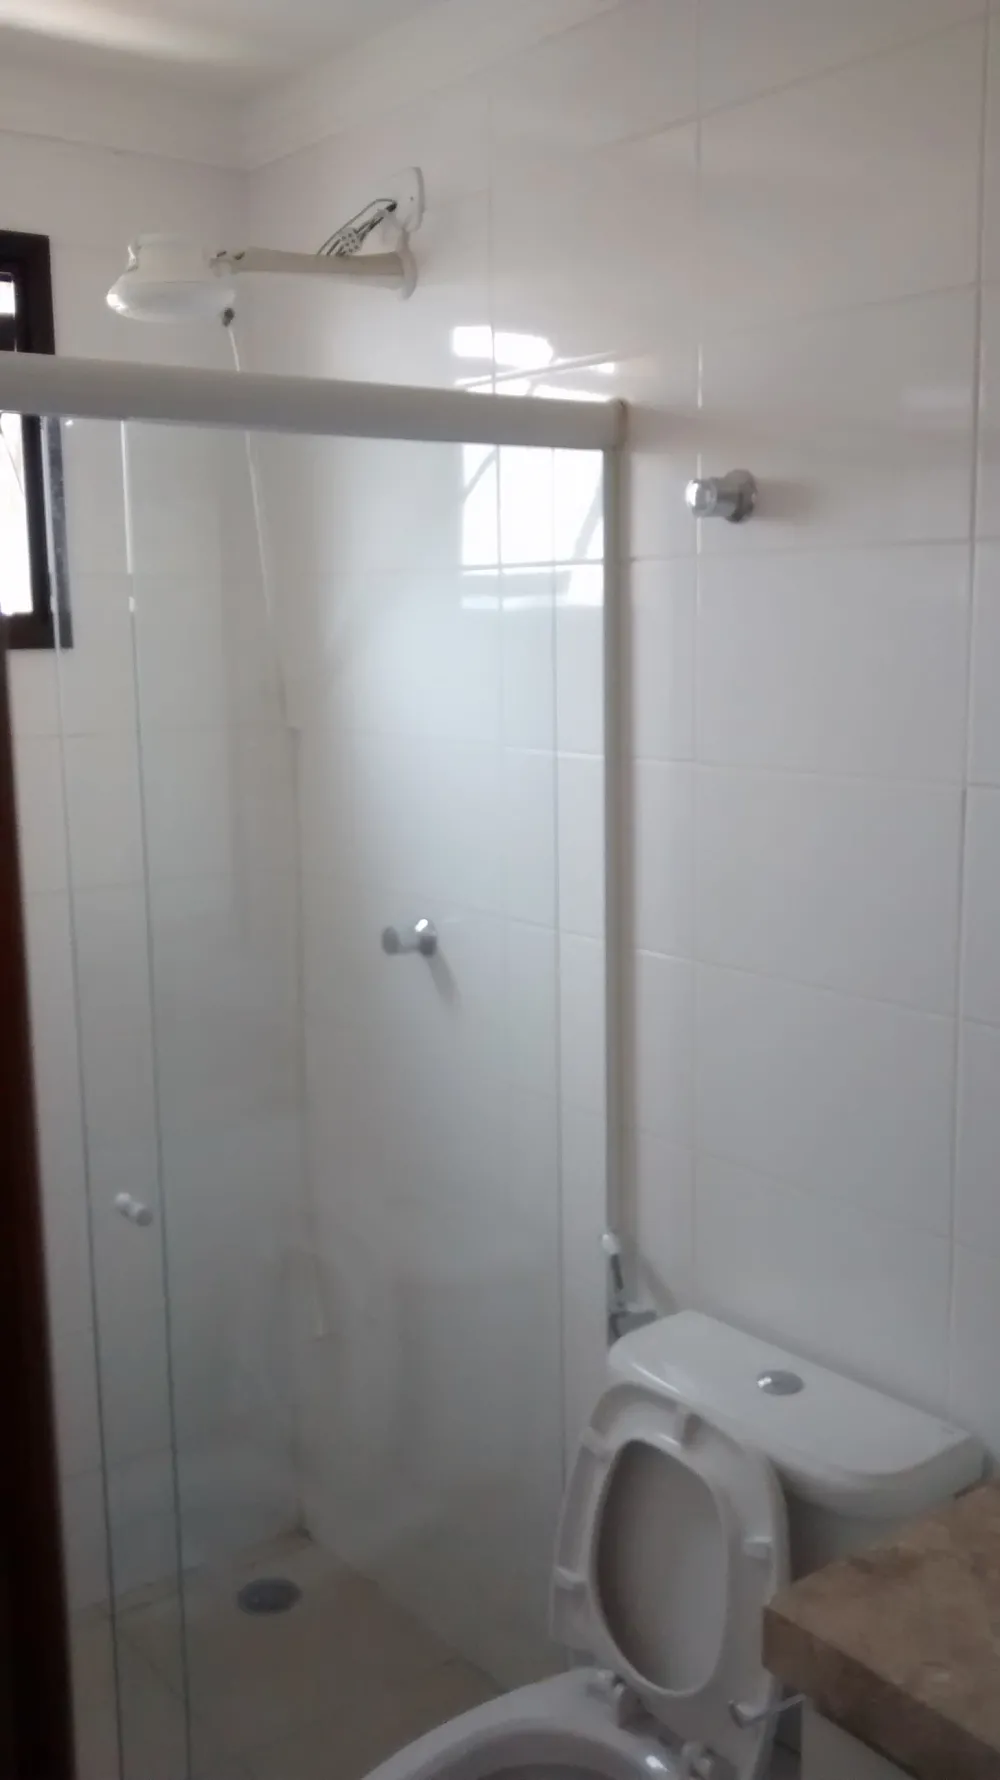 Alugar Apartamento / Padrão em Ribeirão Preto R$ 2.300,00 - Foto 12